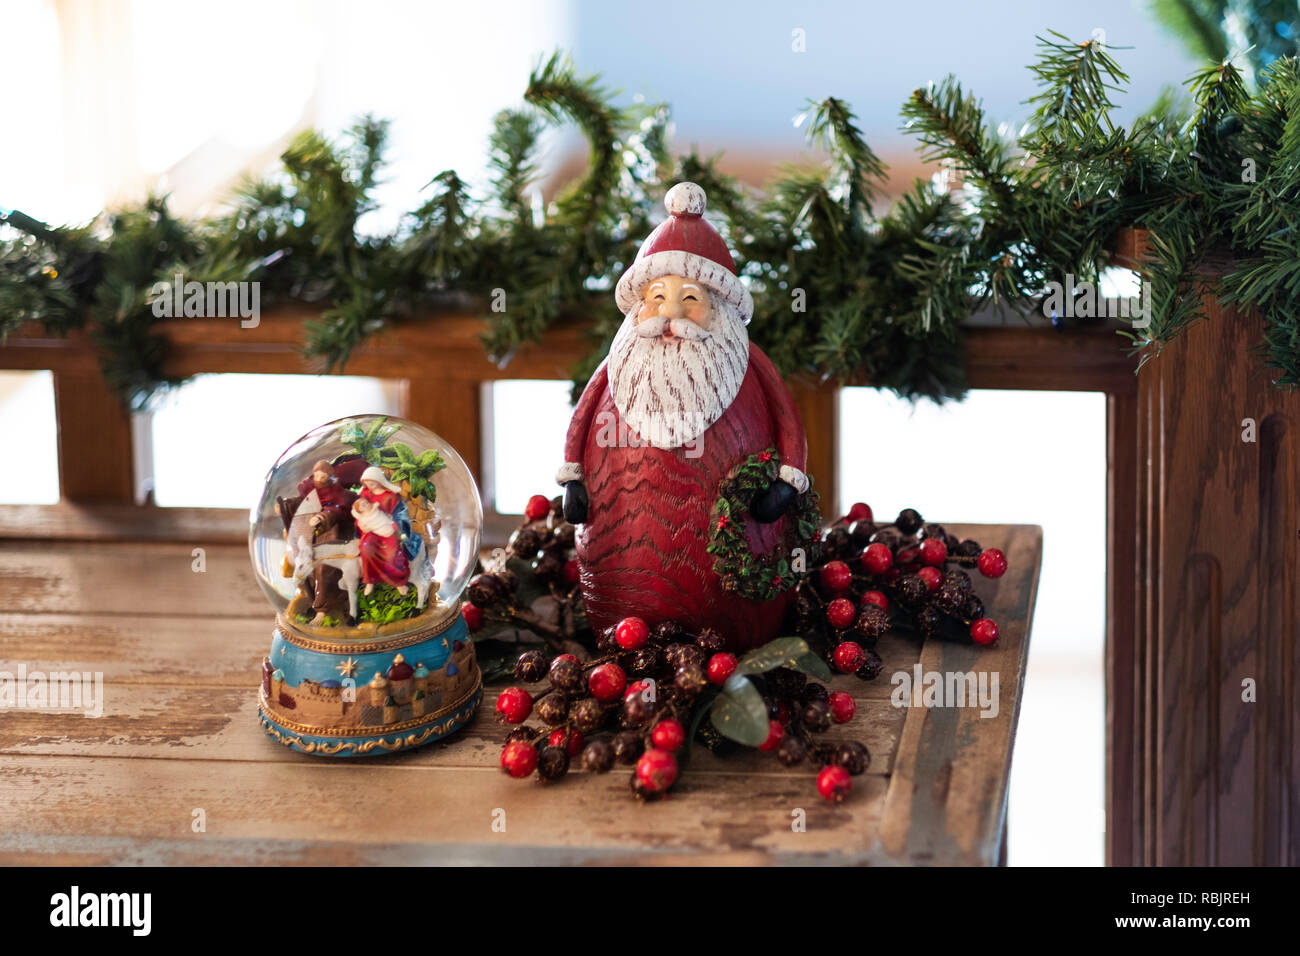 Décorations de Noël, une boule à neige avec crèche vivante et Santa Clause sur une table en bois avec garland sur une balustrade. Banque D'Images